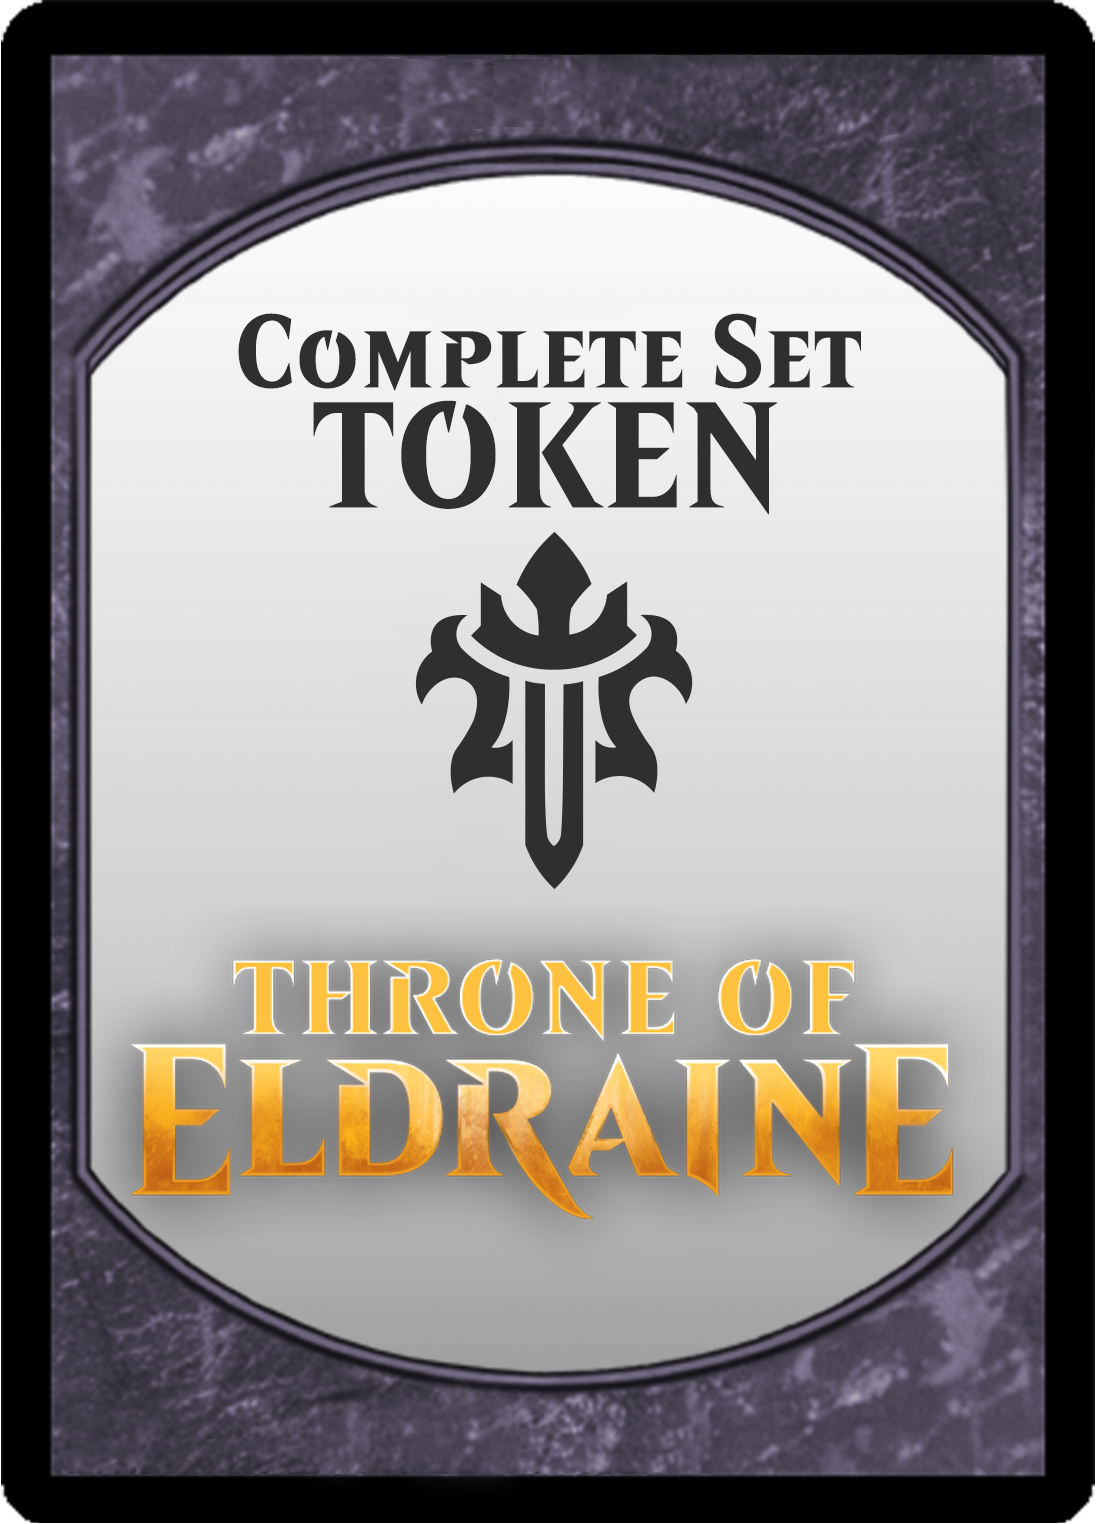 Throne of Eldraine: Token Set